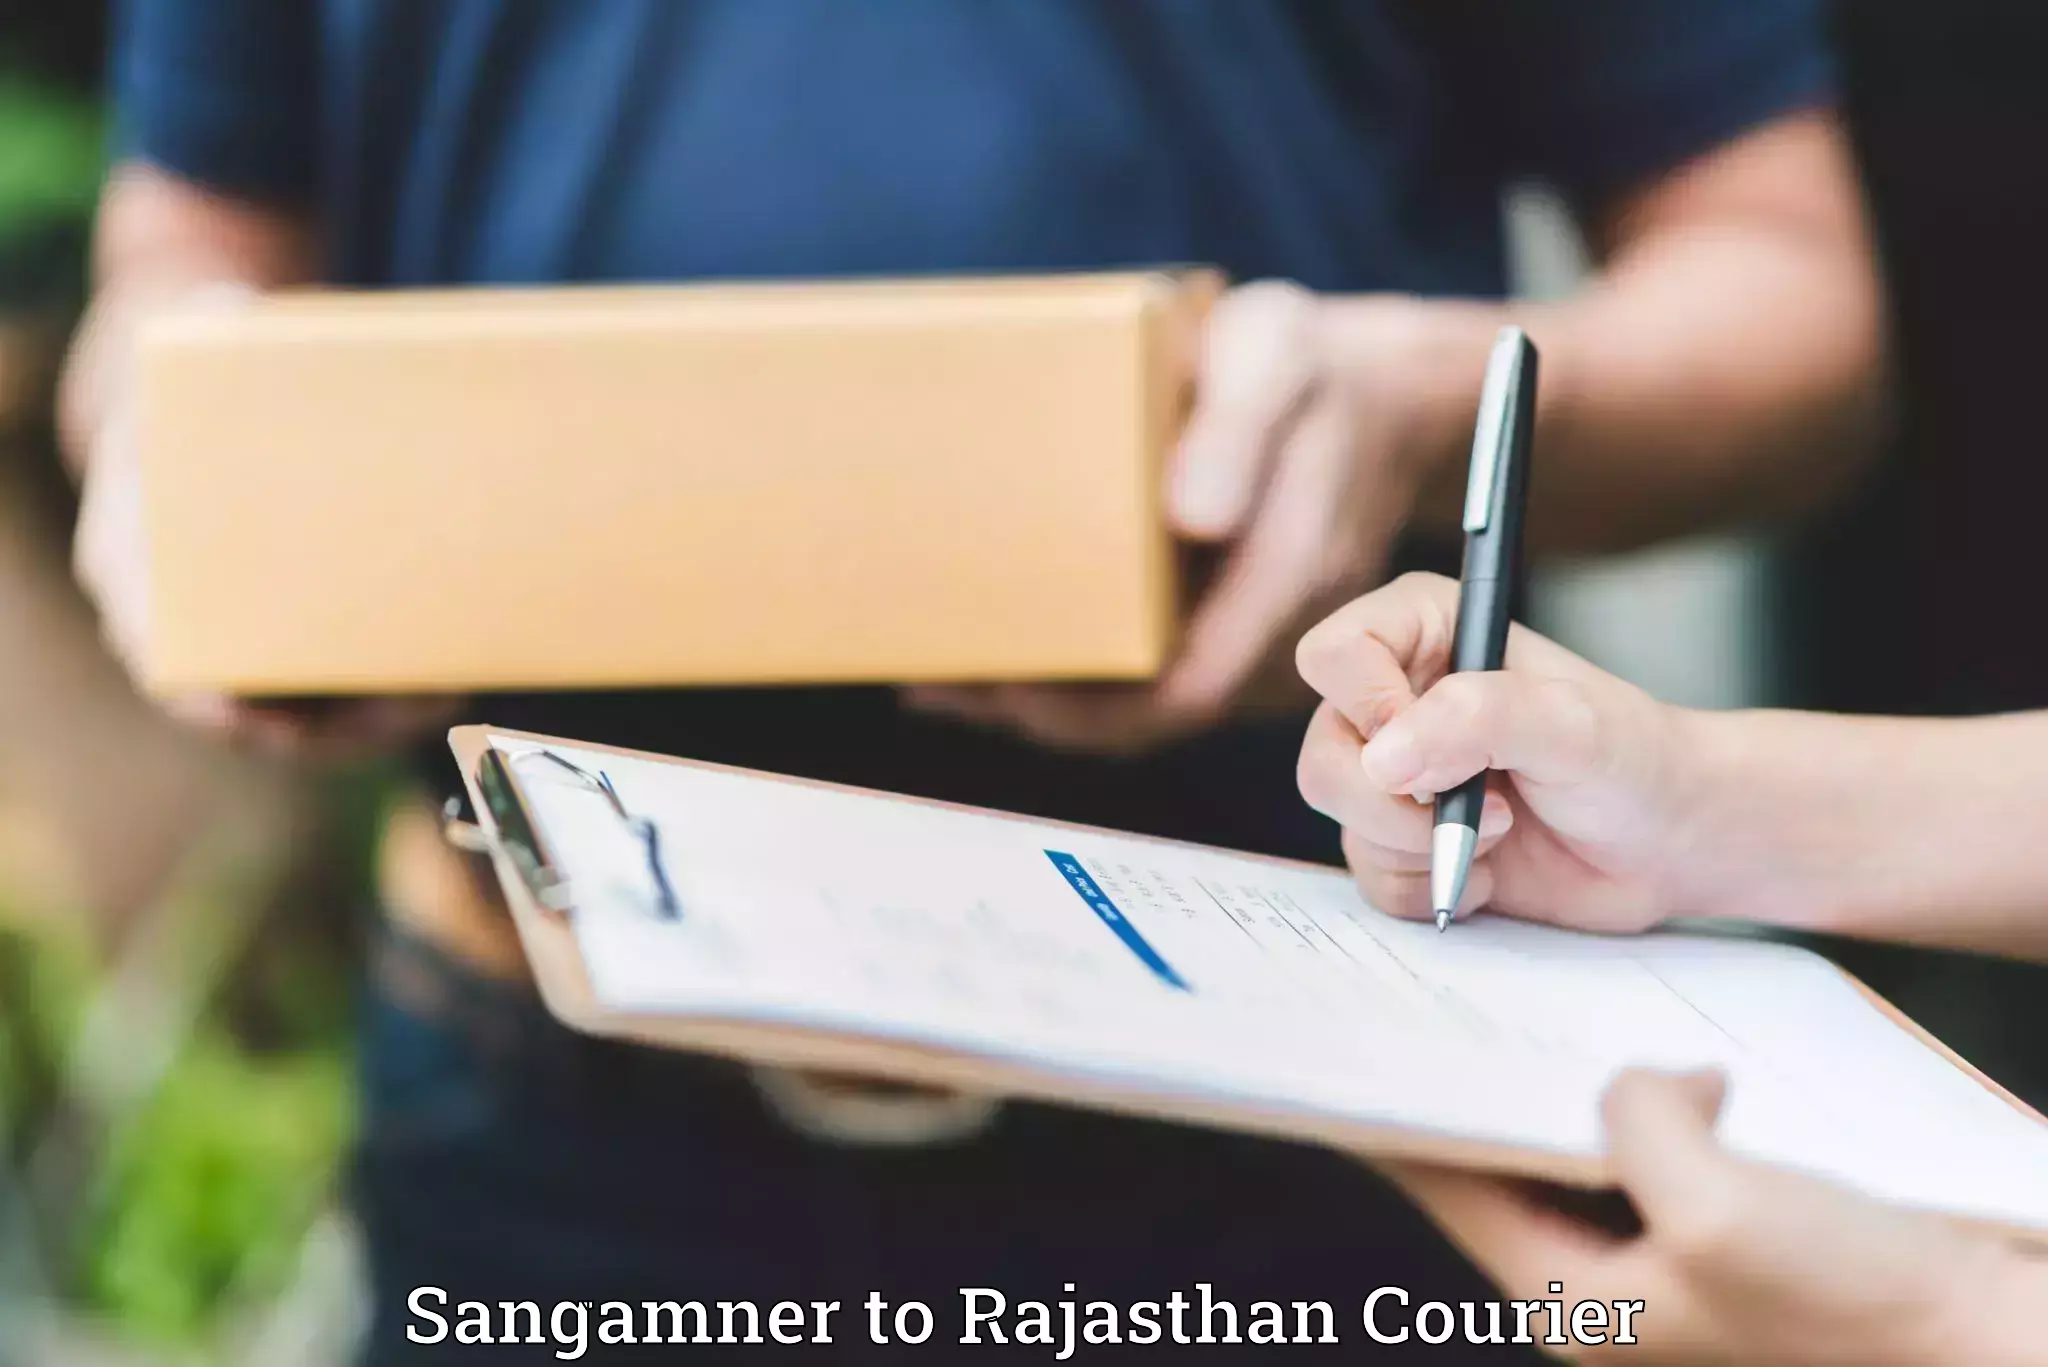 Luggage transport service Sangamner to Rajasthan